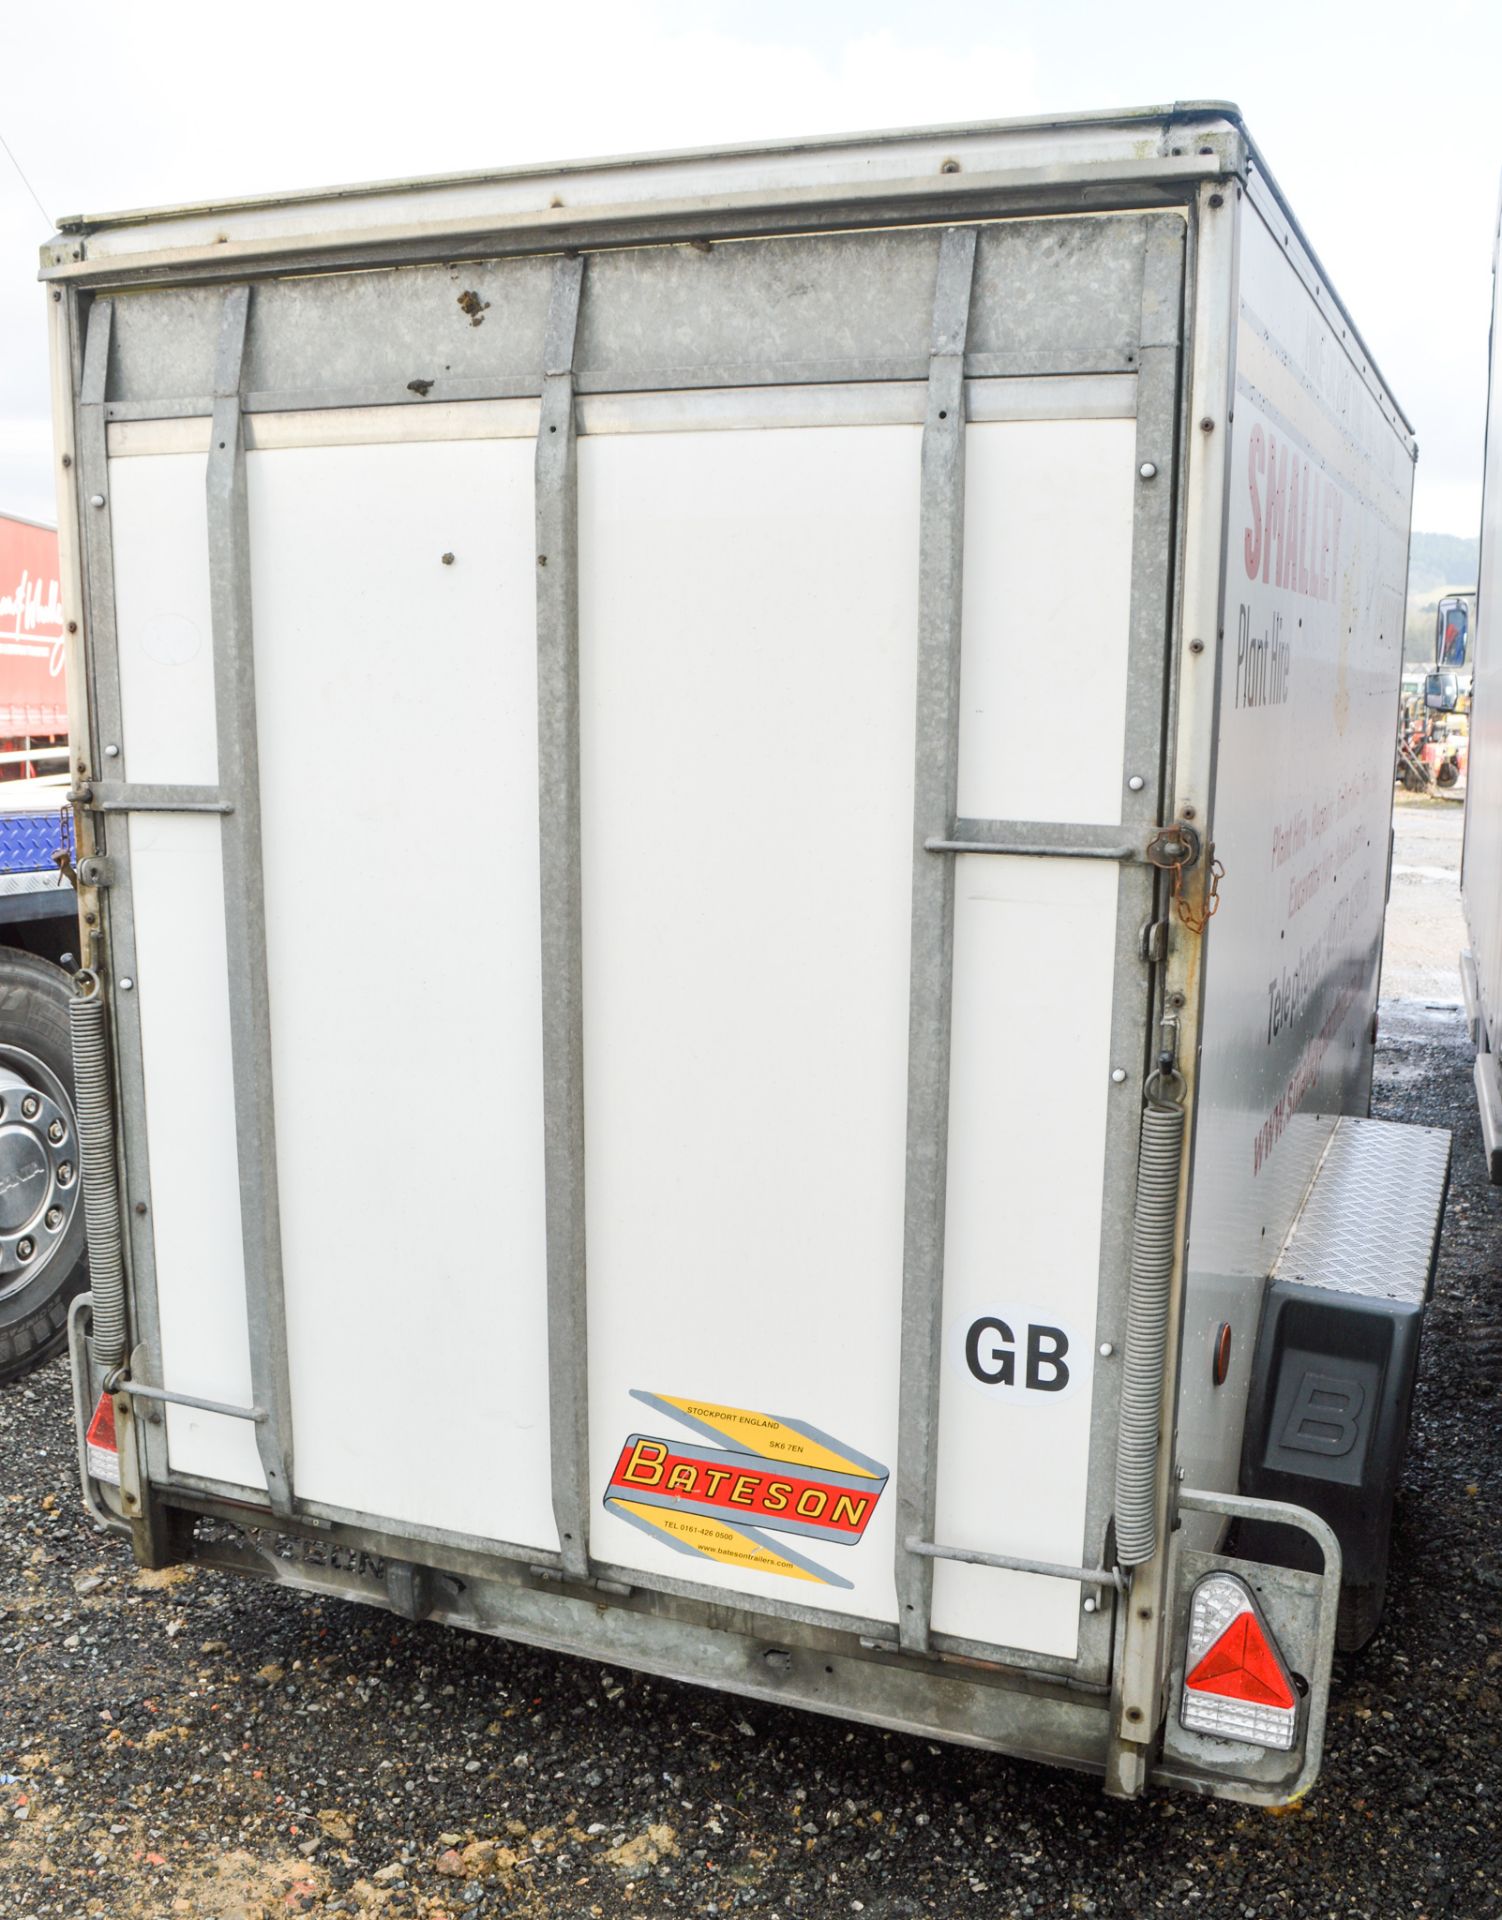 Bateson BV 85 8' by 5' tandem axle box trailer Year: 2012 S/N: 41243 c/w hitch lock key - Image 2 of 3